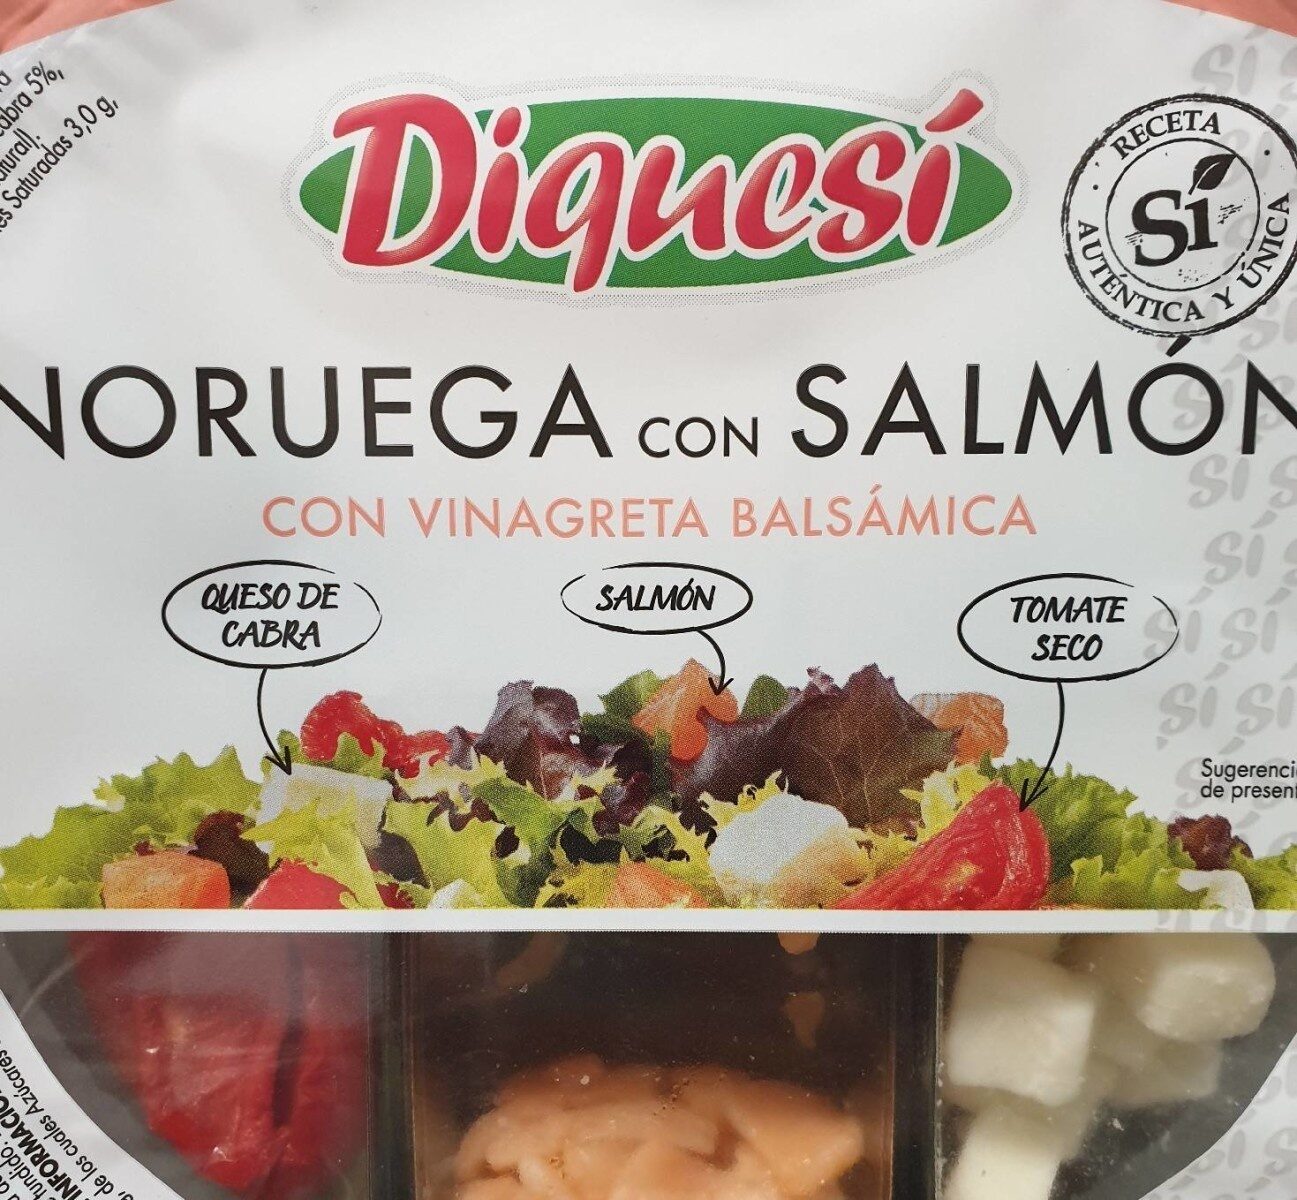 Ensalada "noruega con salmón" - Product - es